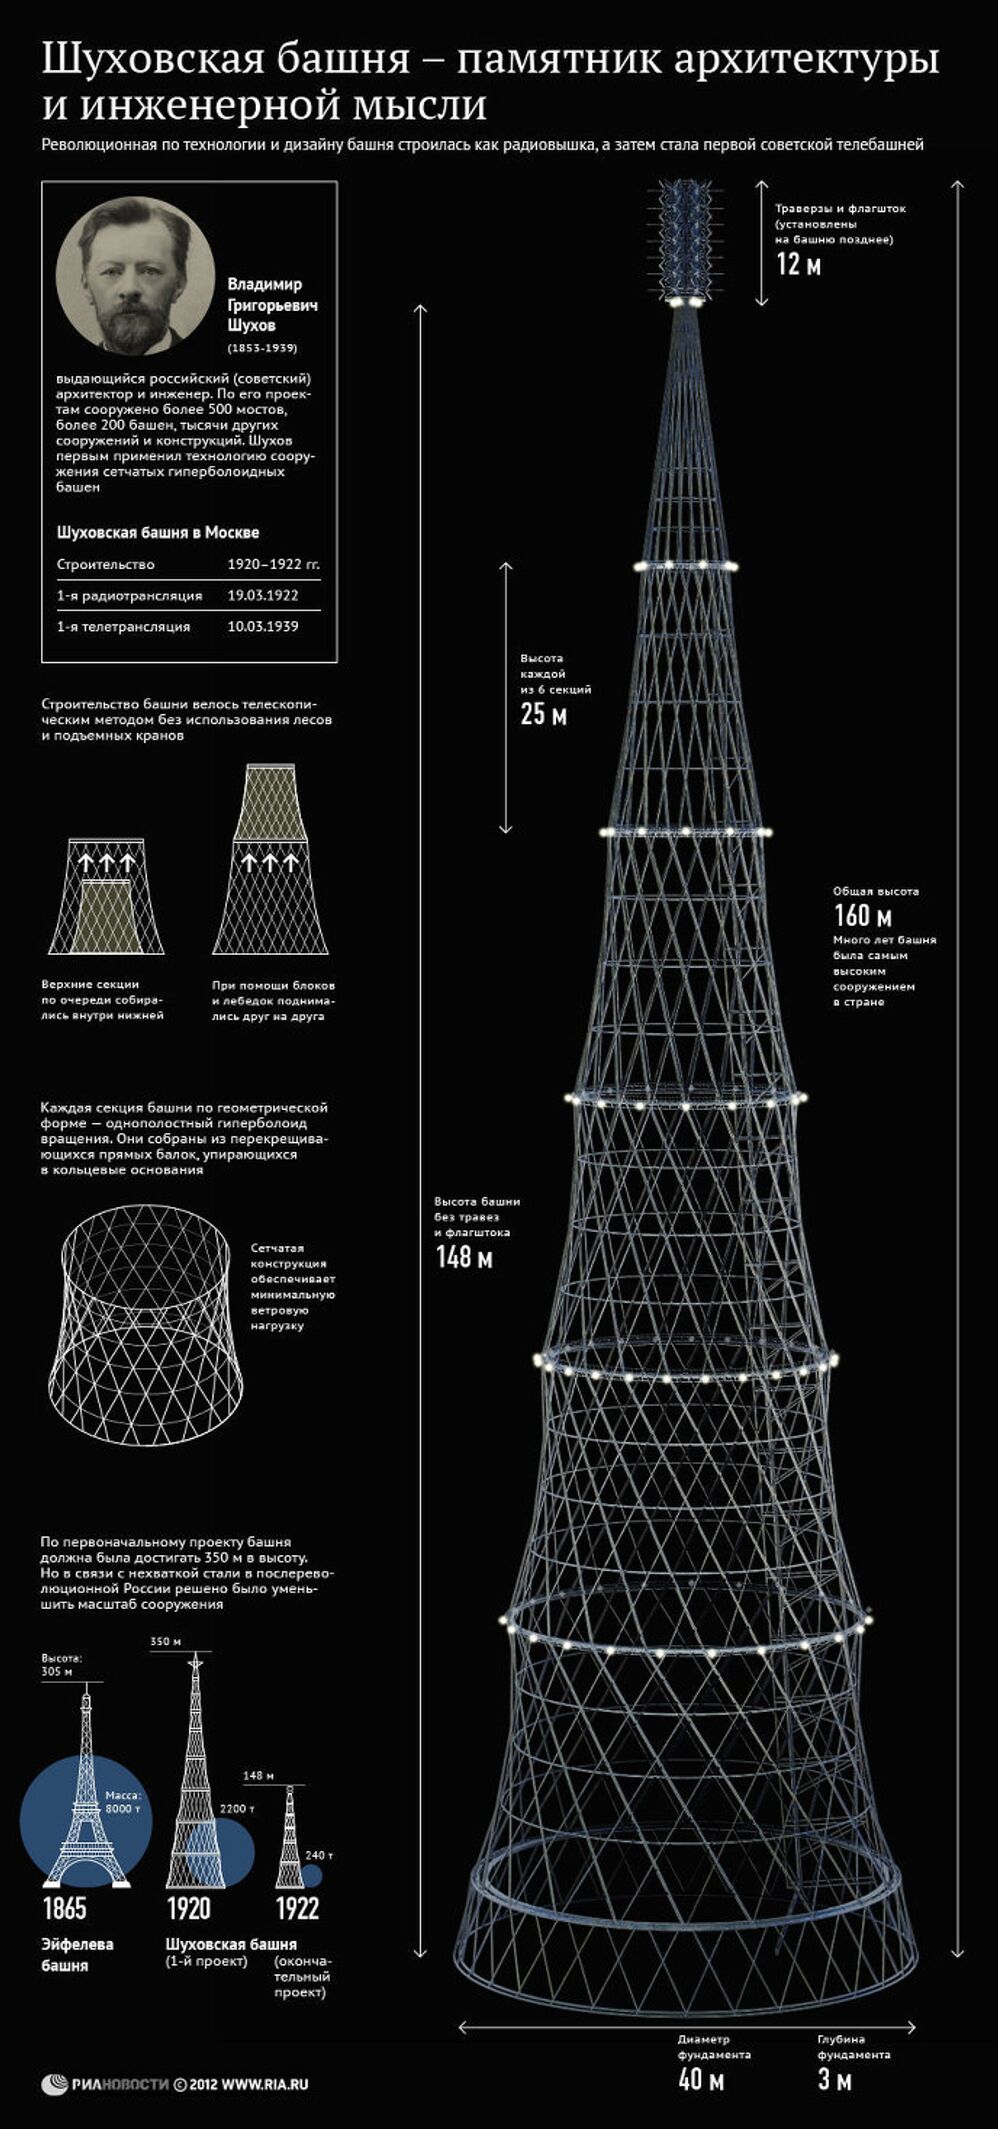 Шуховская башня – памятник архитектуры и инженерной мысли 